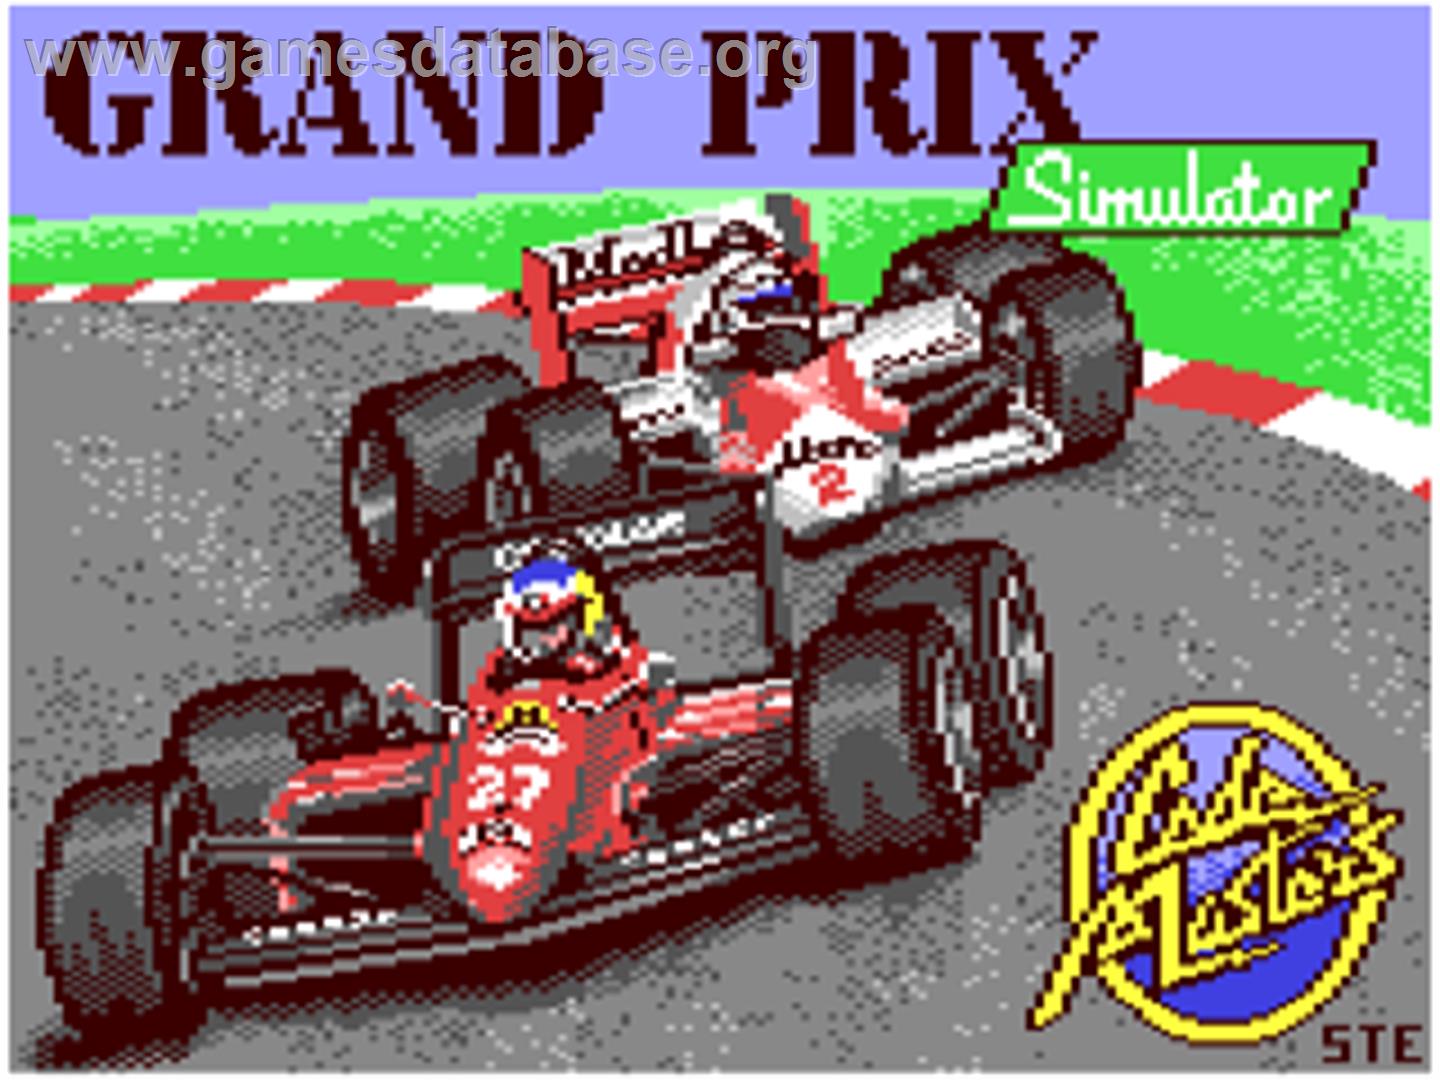 Grand Prix Simulator - Commodore 64 - Artwork - Title Screen